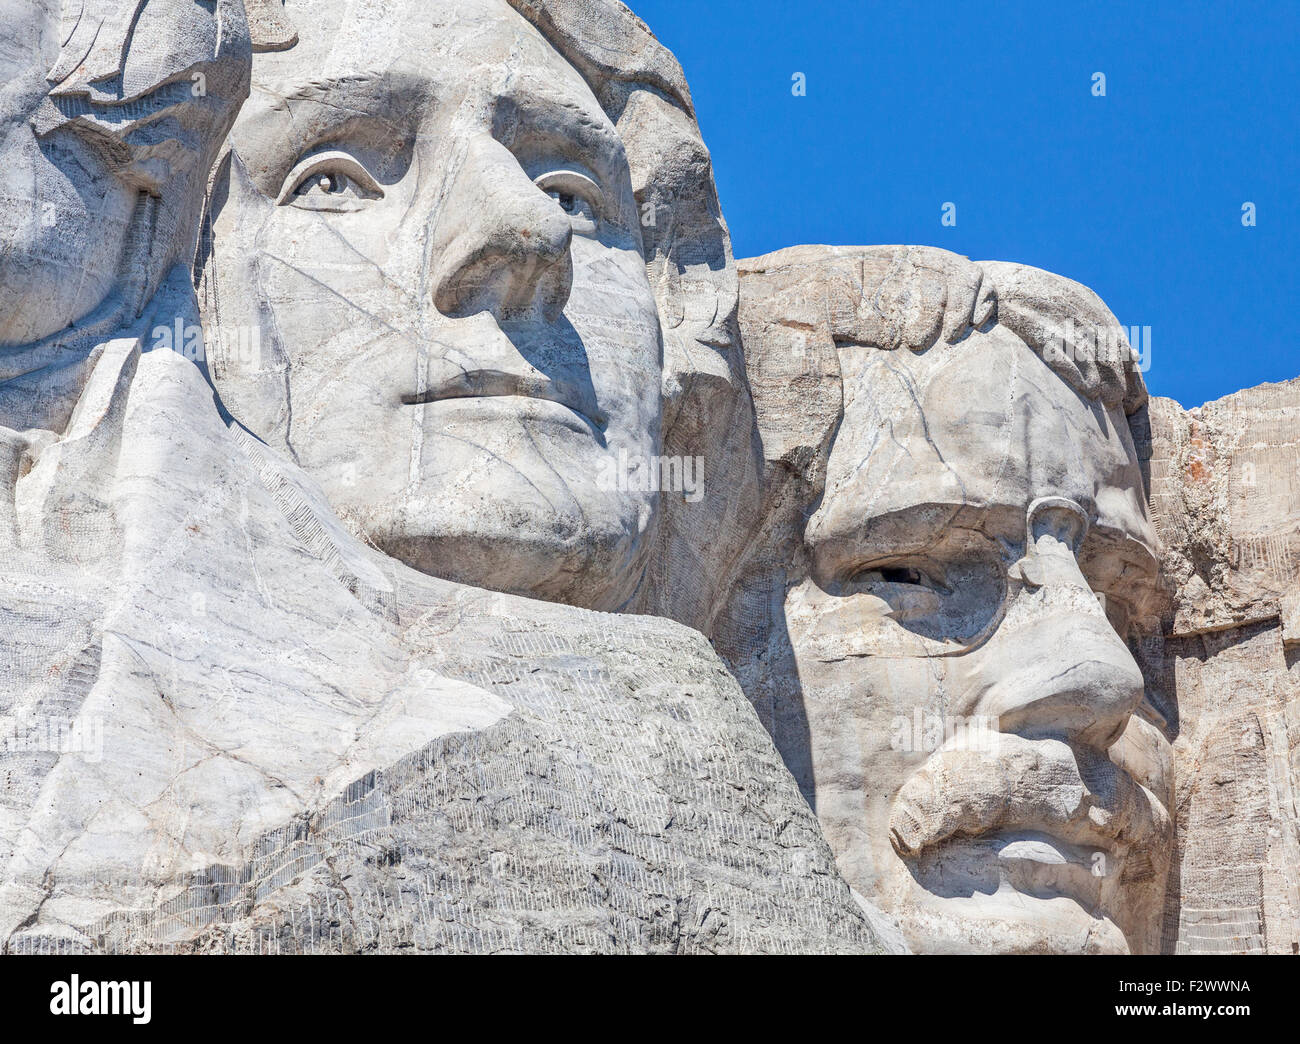 Ein Blick von Roosevelt und Jefferson am Mount Rushmore National Memorial in South Dakota. Stockfoto